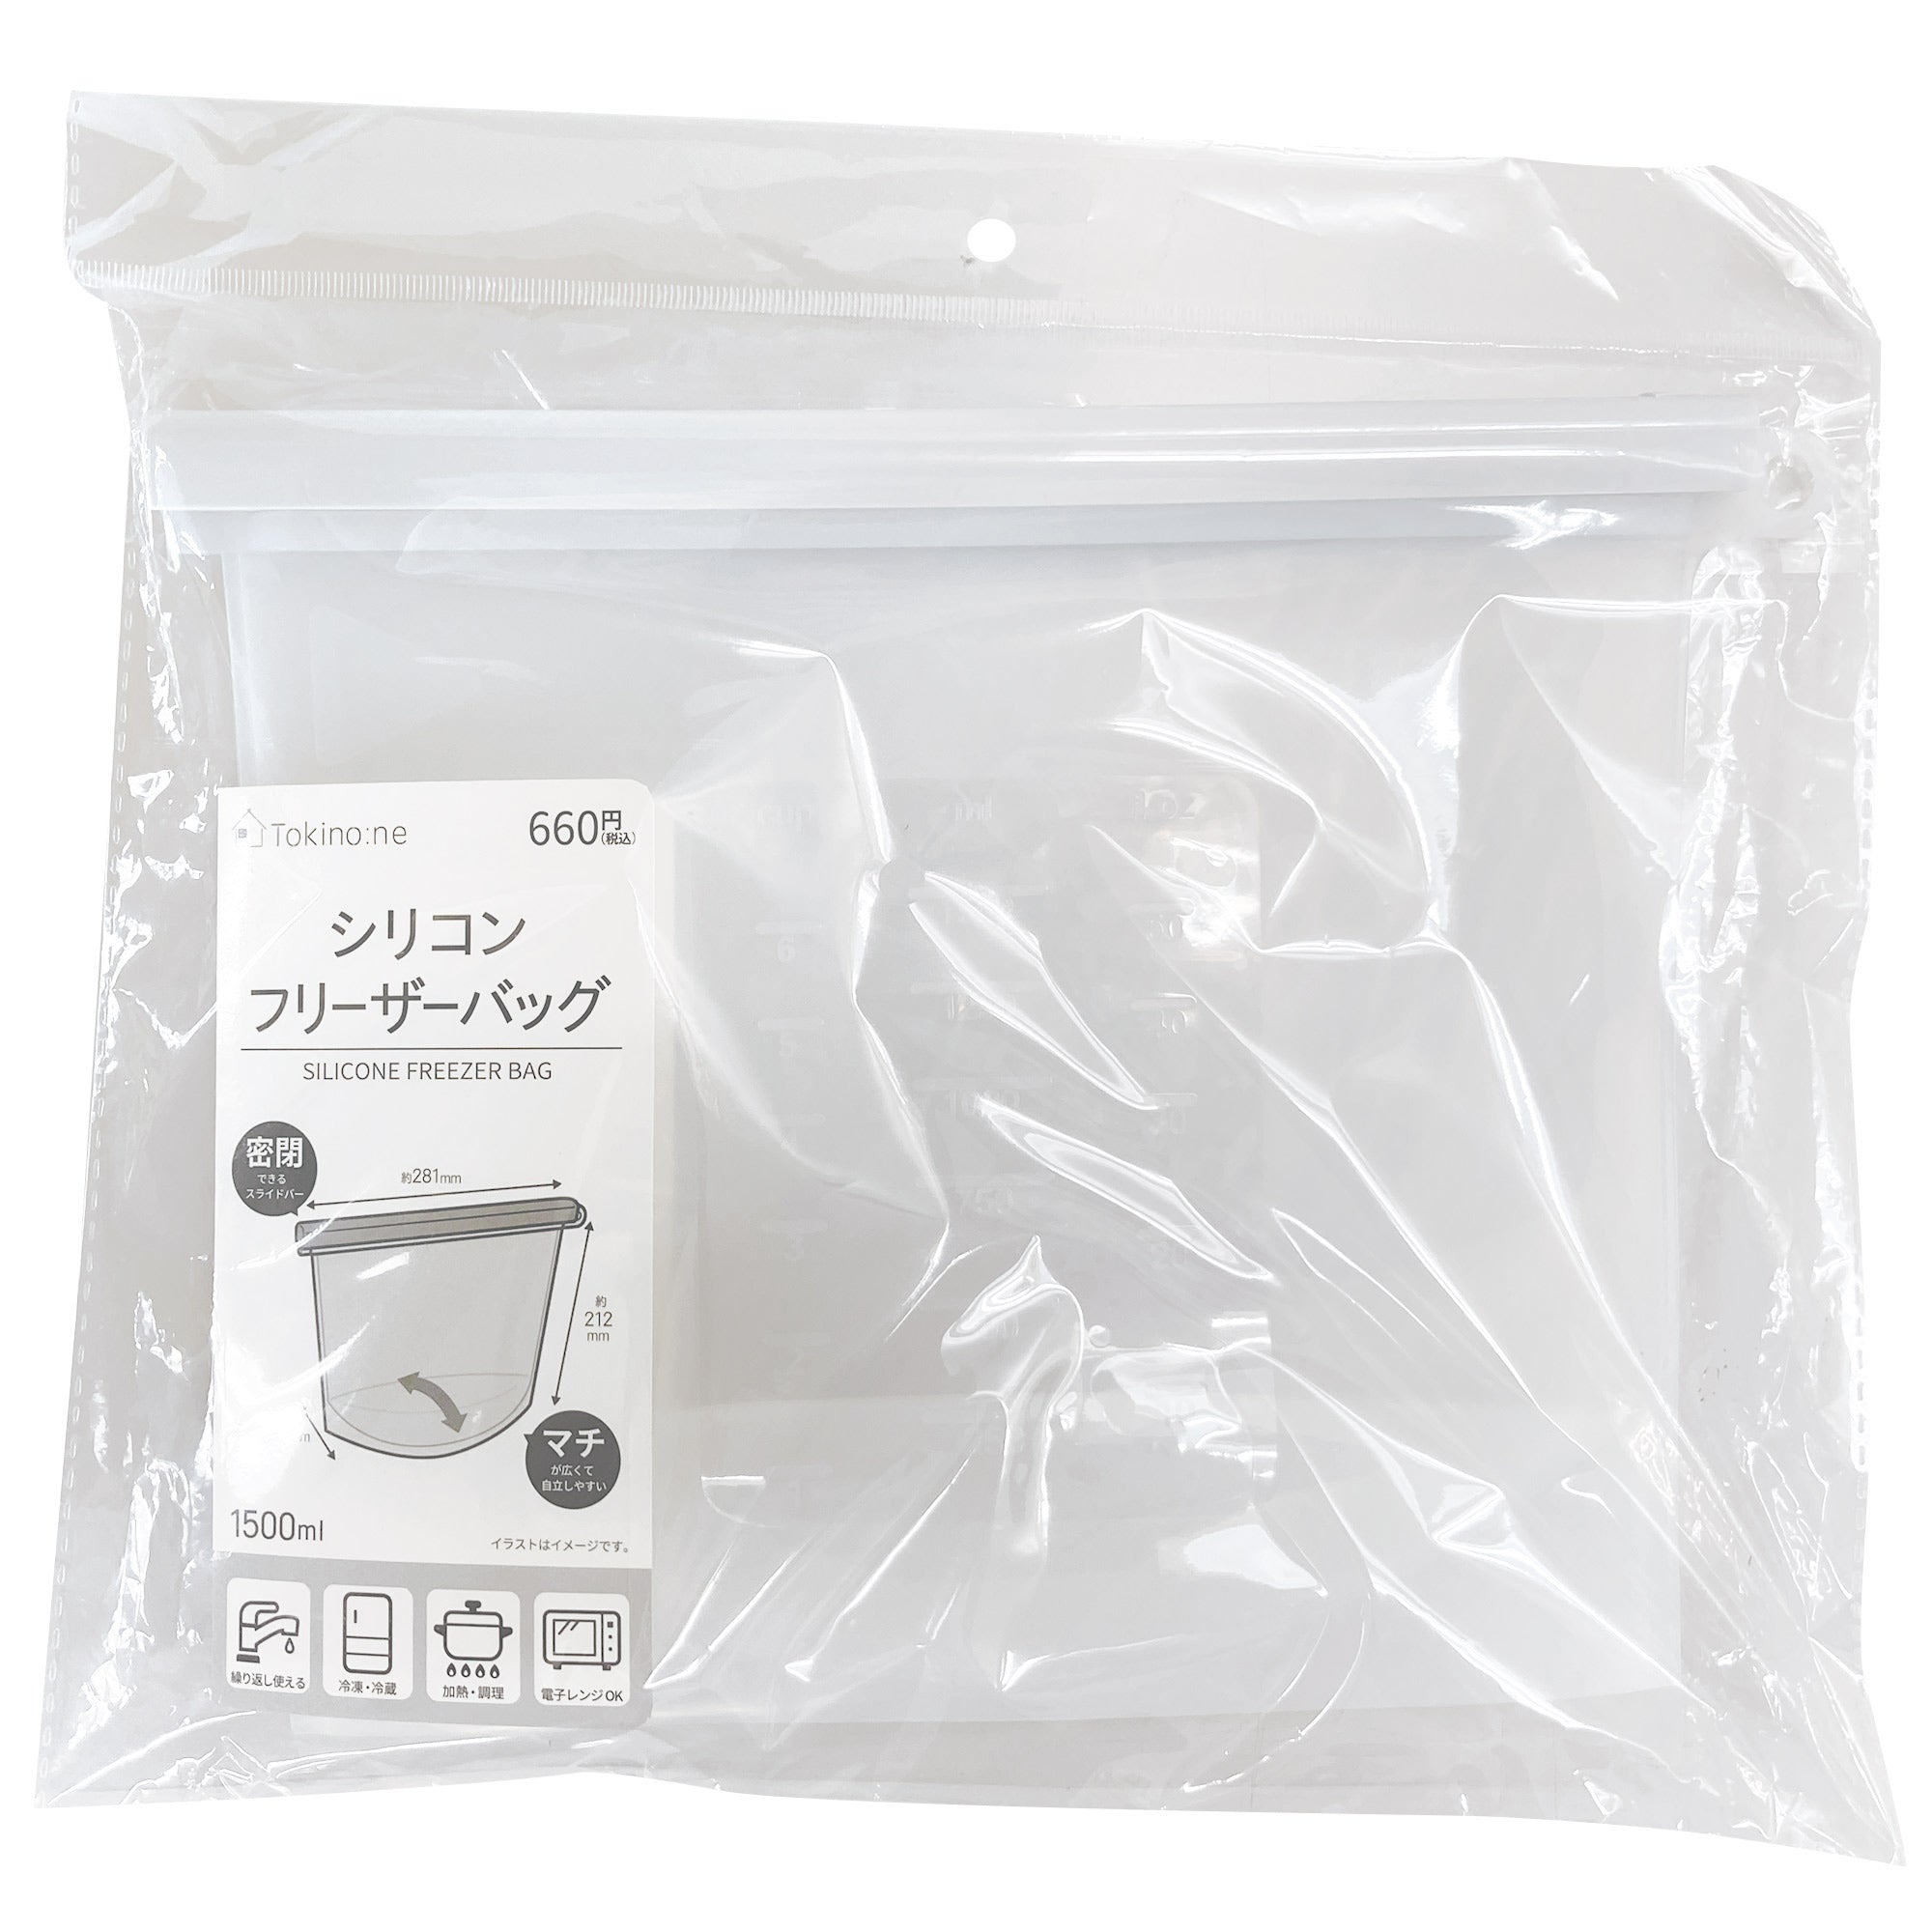 ジップバッグ 食品保存袋 ストックバッグ Tokinone PB.シリコンフリーザーバッグ 1500ml 9001/059851